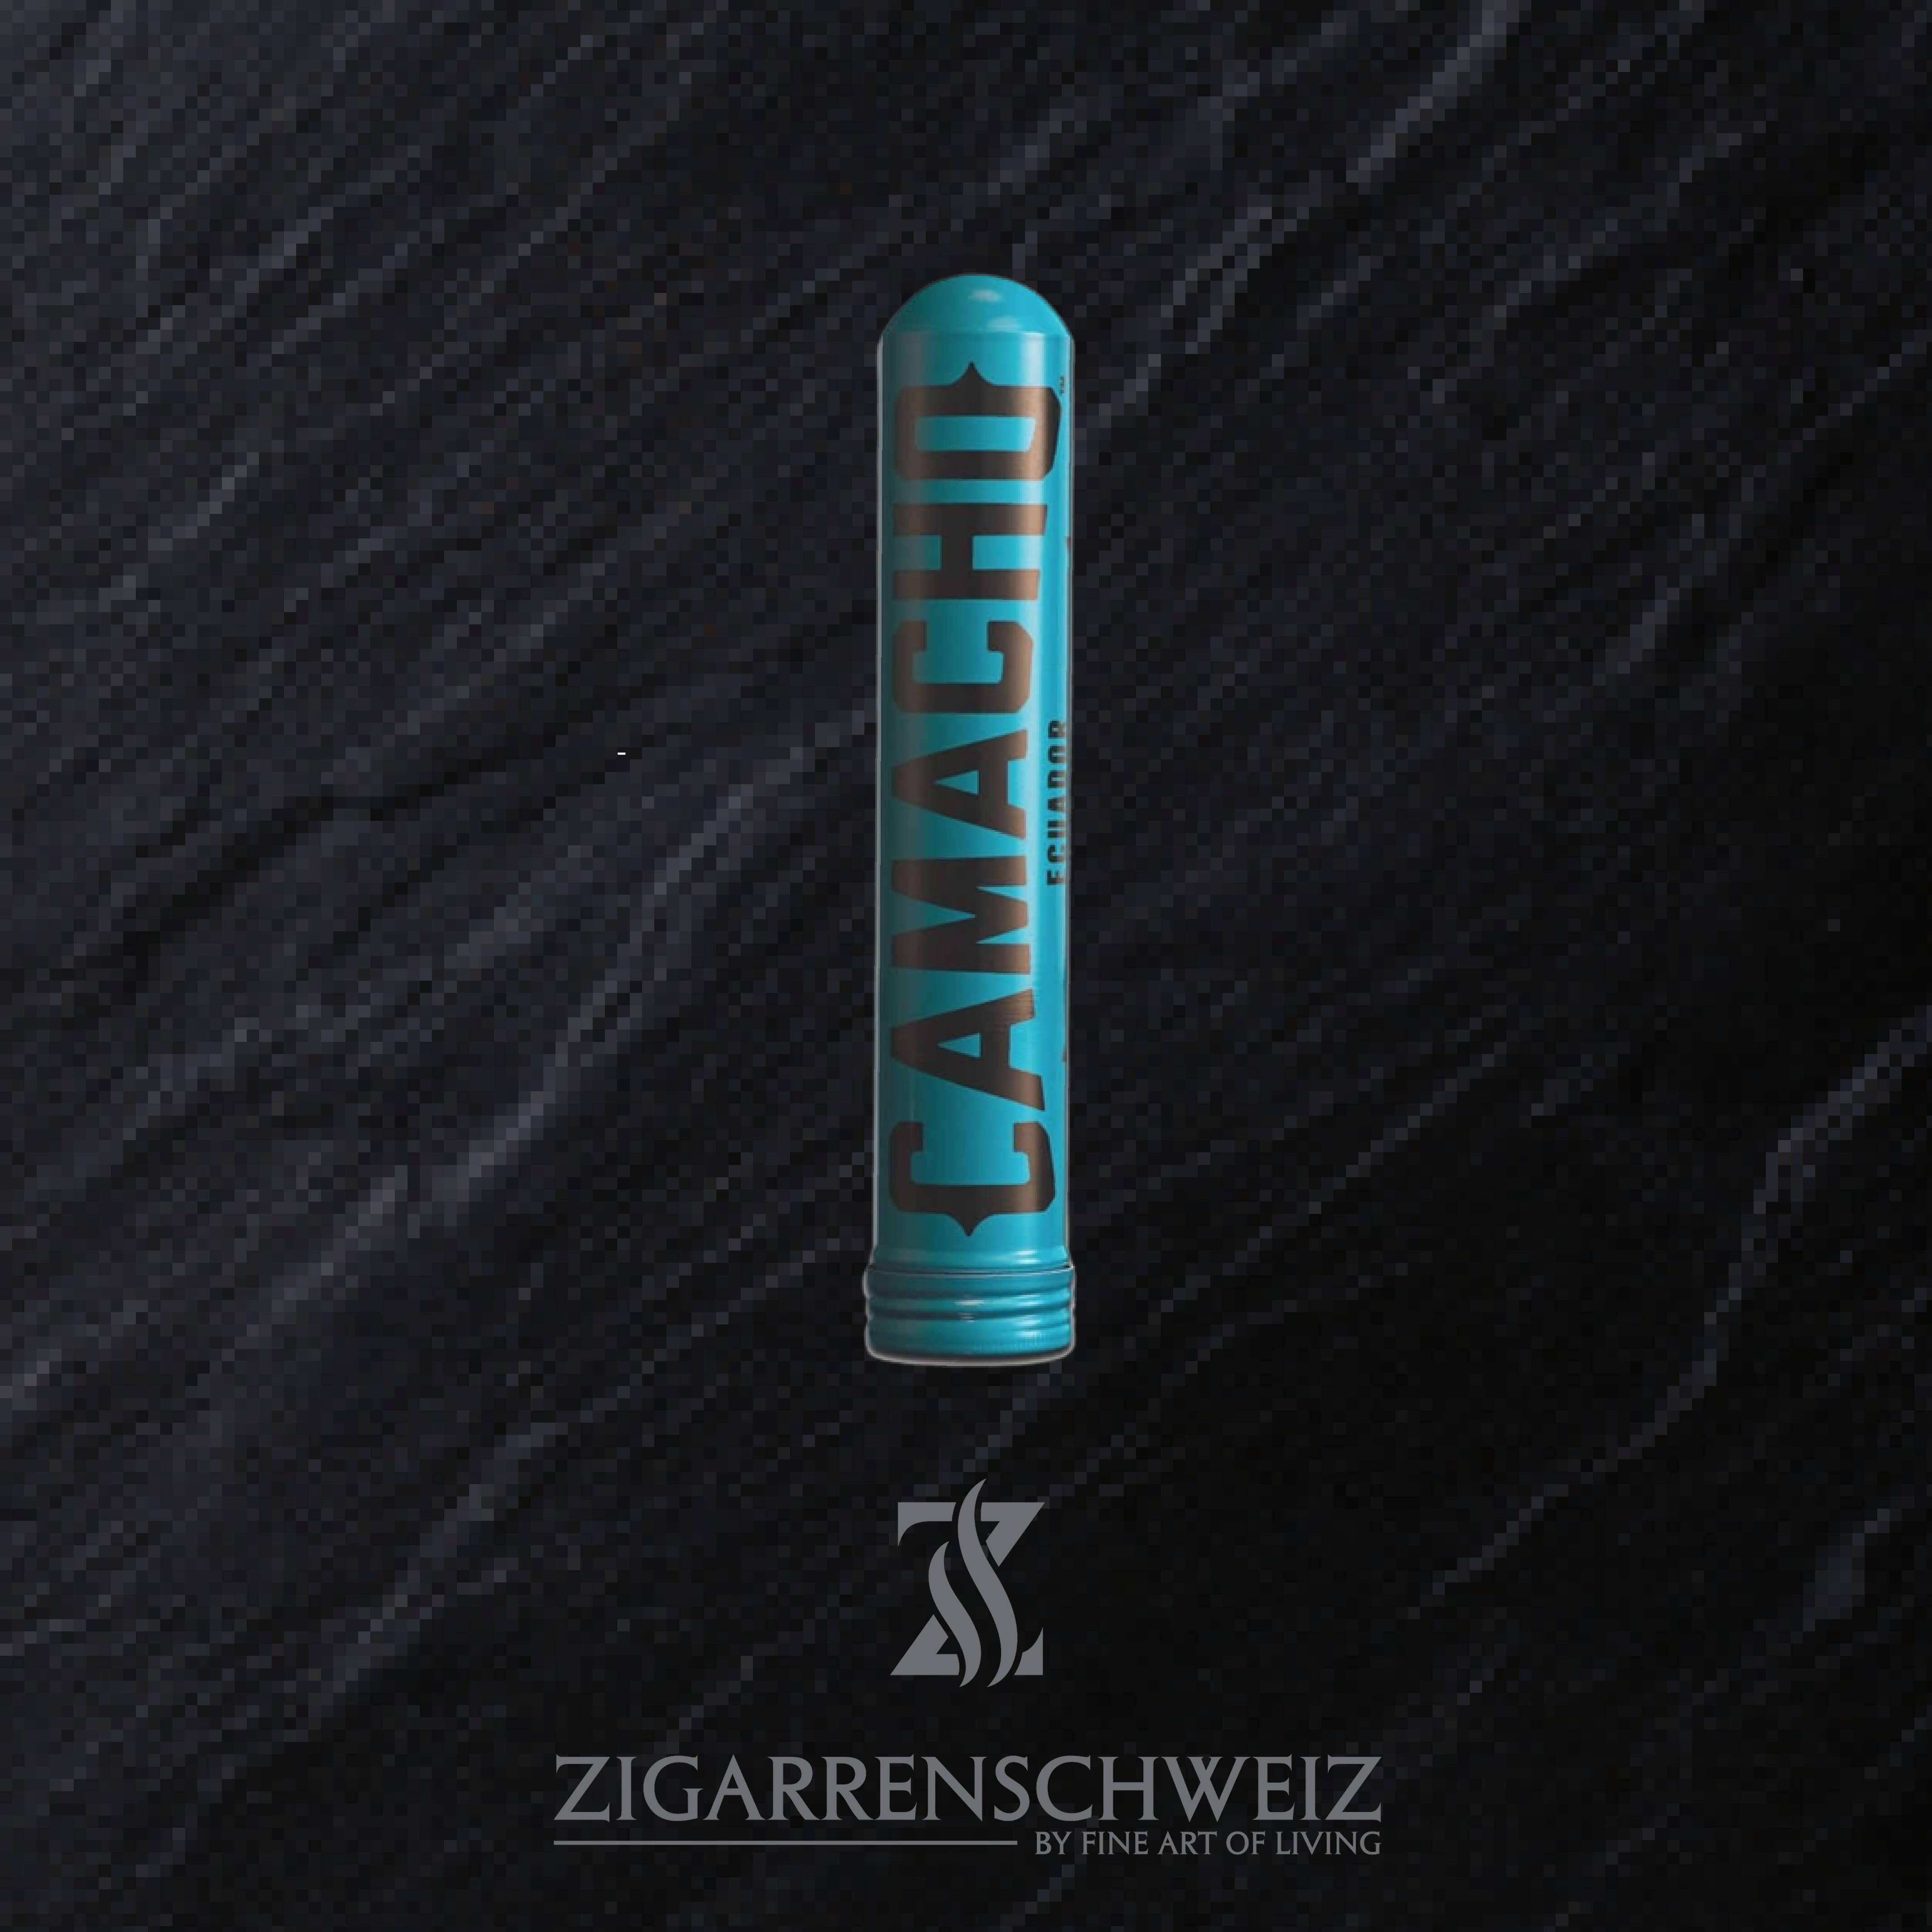 Camacho Ecuador Robusto Tubo Zigarren Schweiz